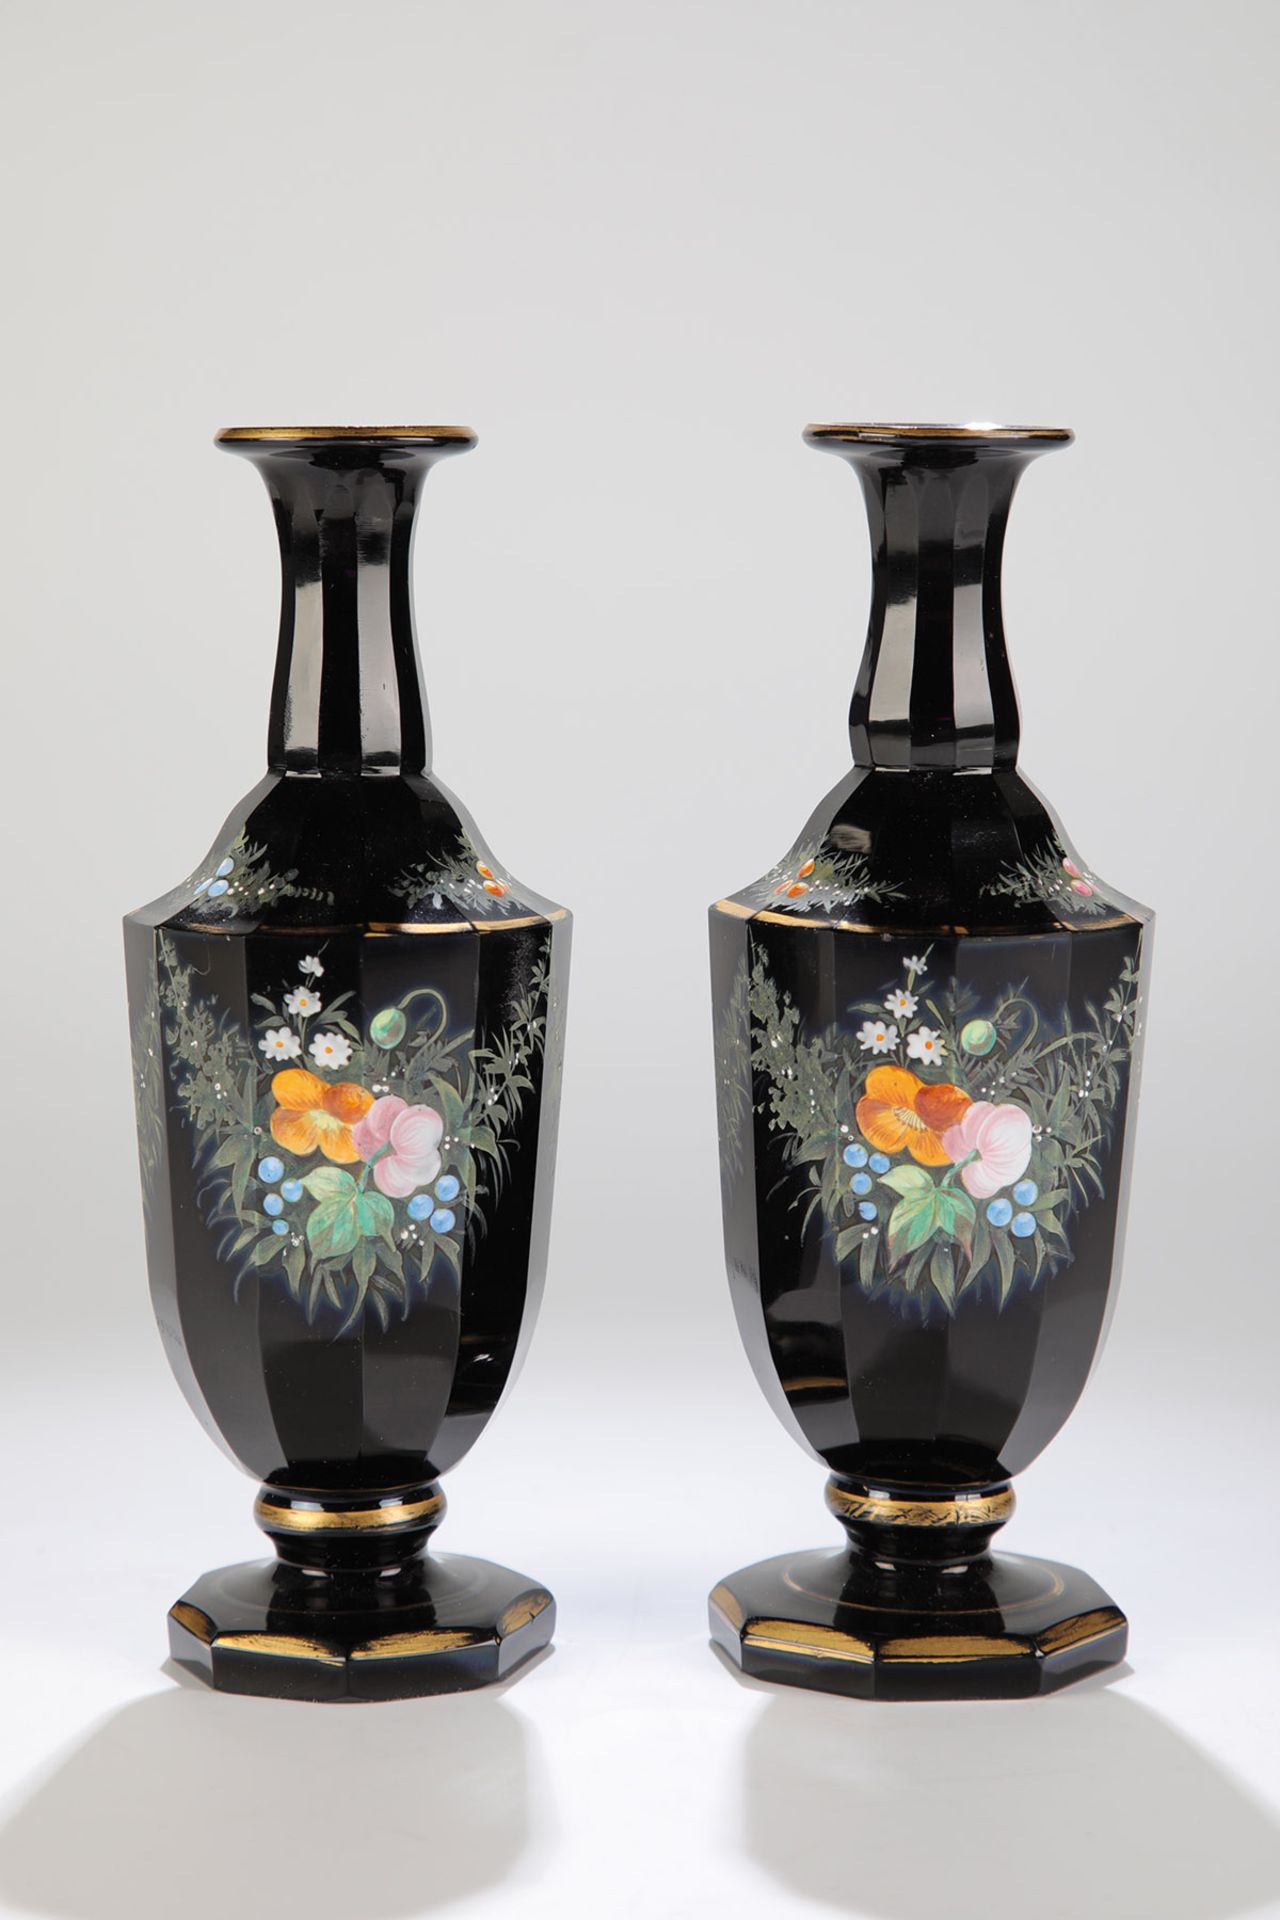 Paar Vasen mit floralen GehängenBöhmen, Mitte 19. Jh. Tiefviolettes, fast schwarzes, vielfach